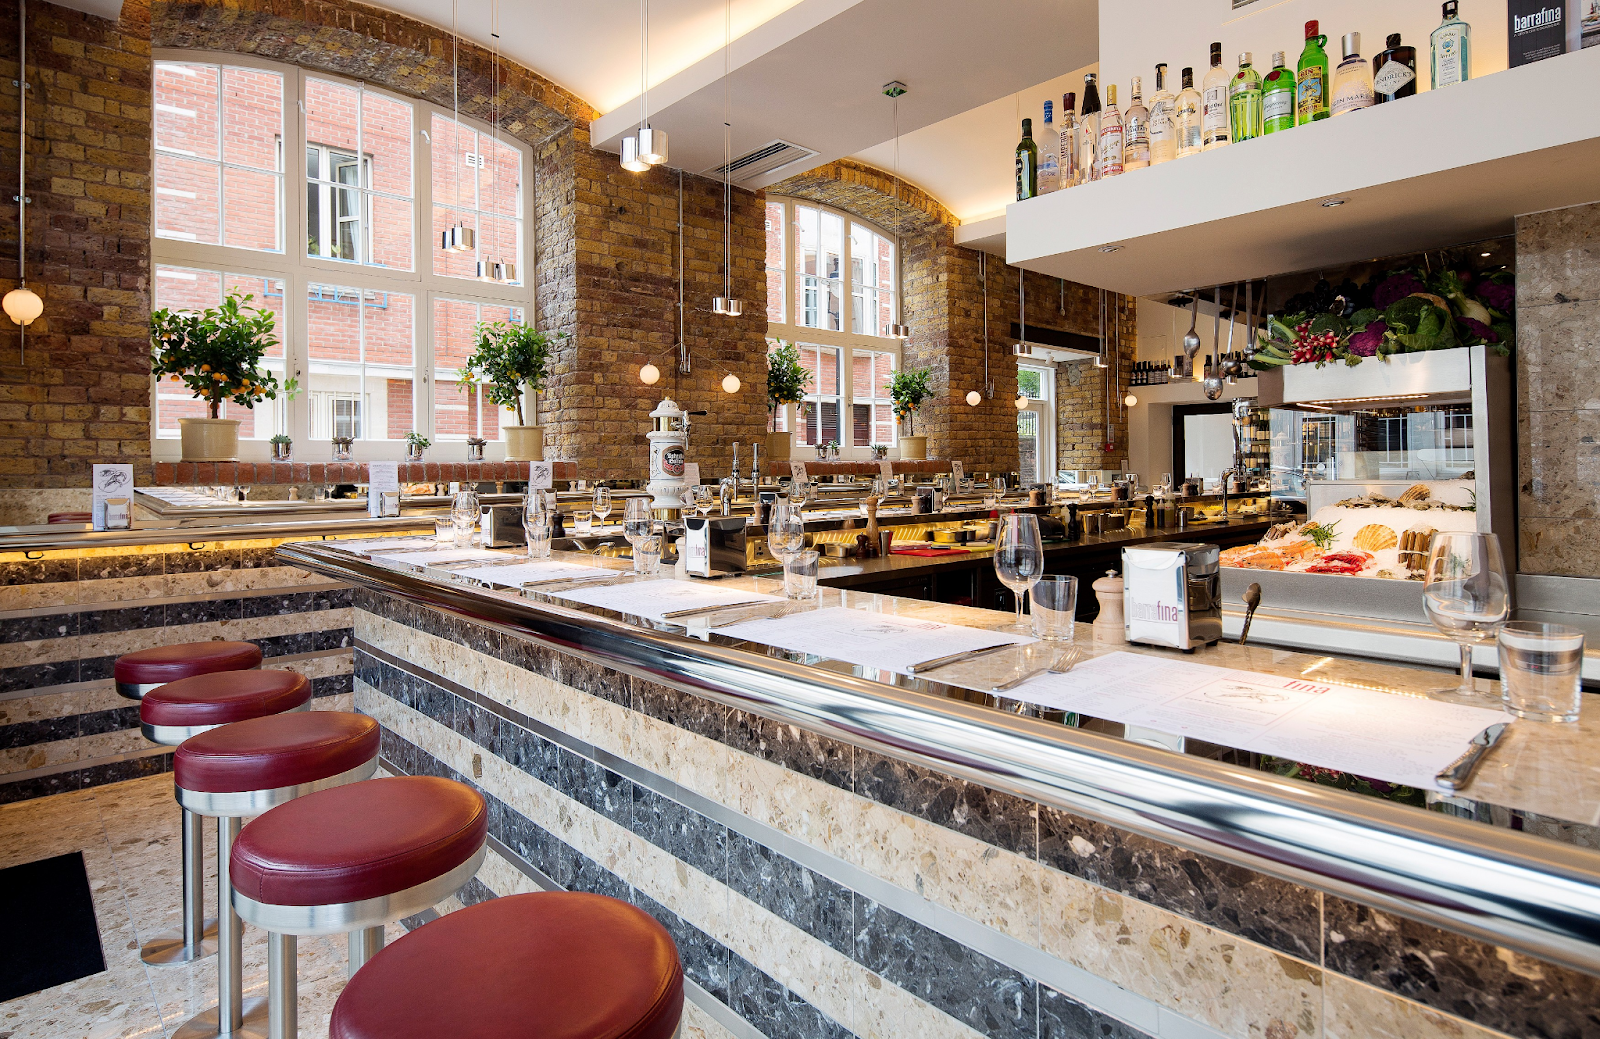 udskille Til Ni Kostbar Best Restaurants in London | Top 10 | Enjoy London